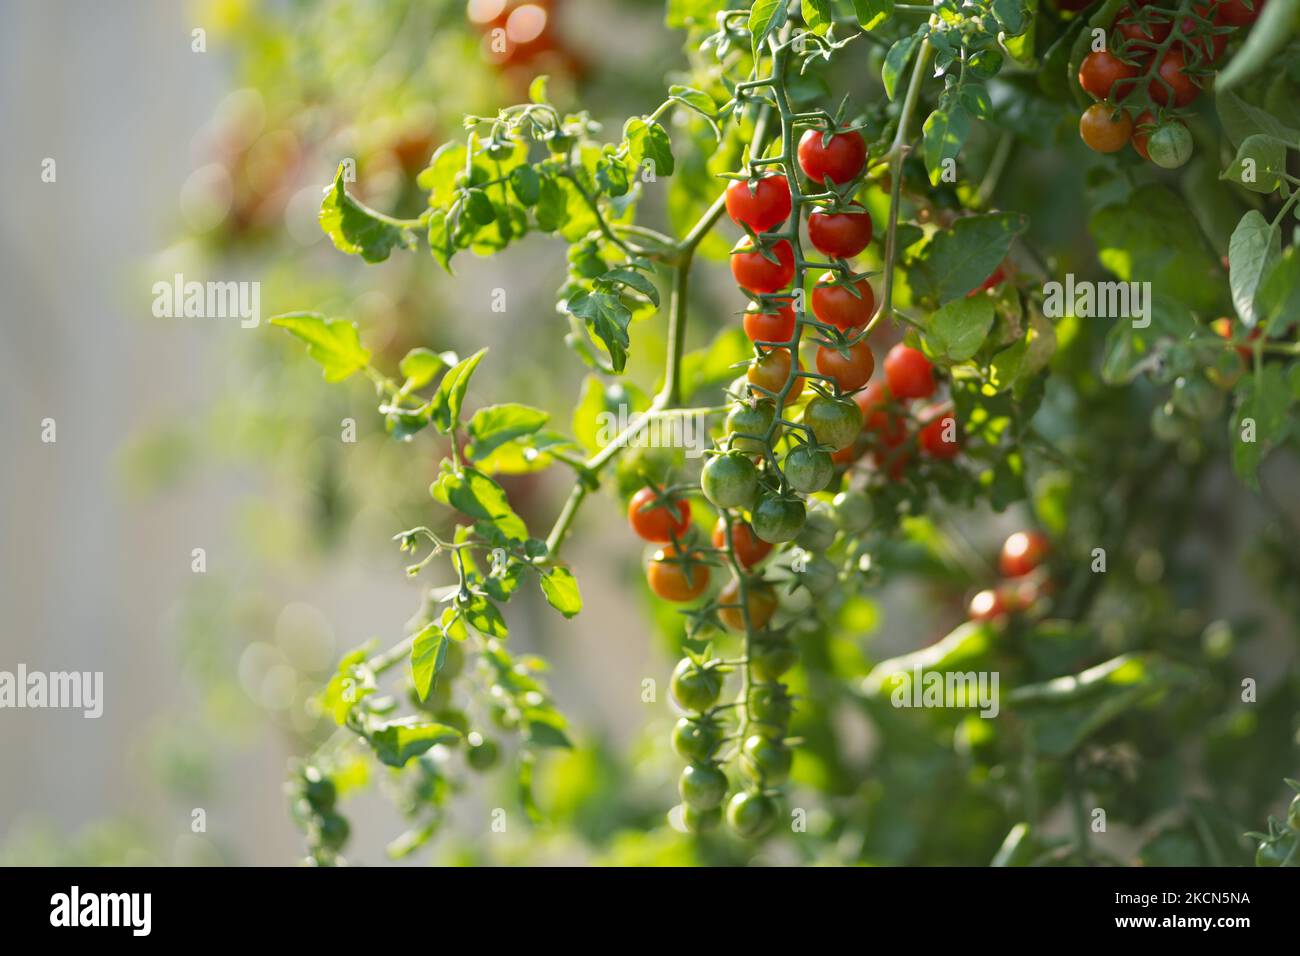 Kirschtomatenfrüchte hängen vom grünen Busch, der im Gewächshaus oder auf der Plantage wächst Stockfoto